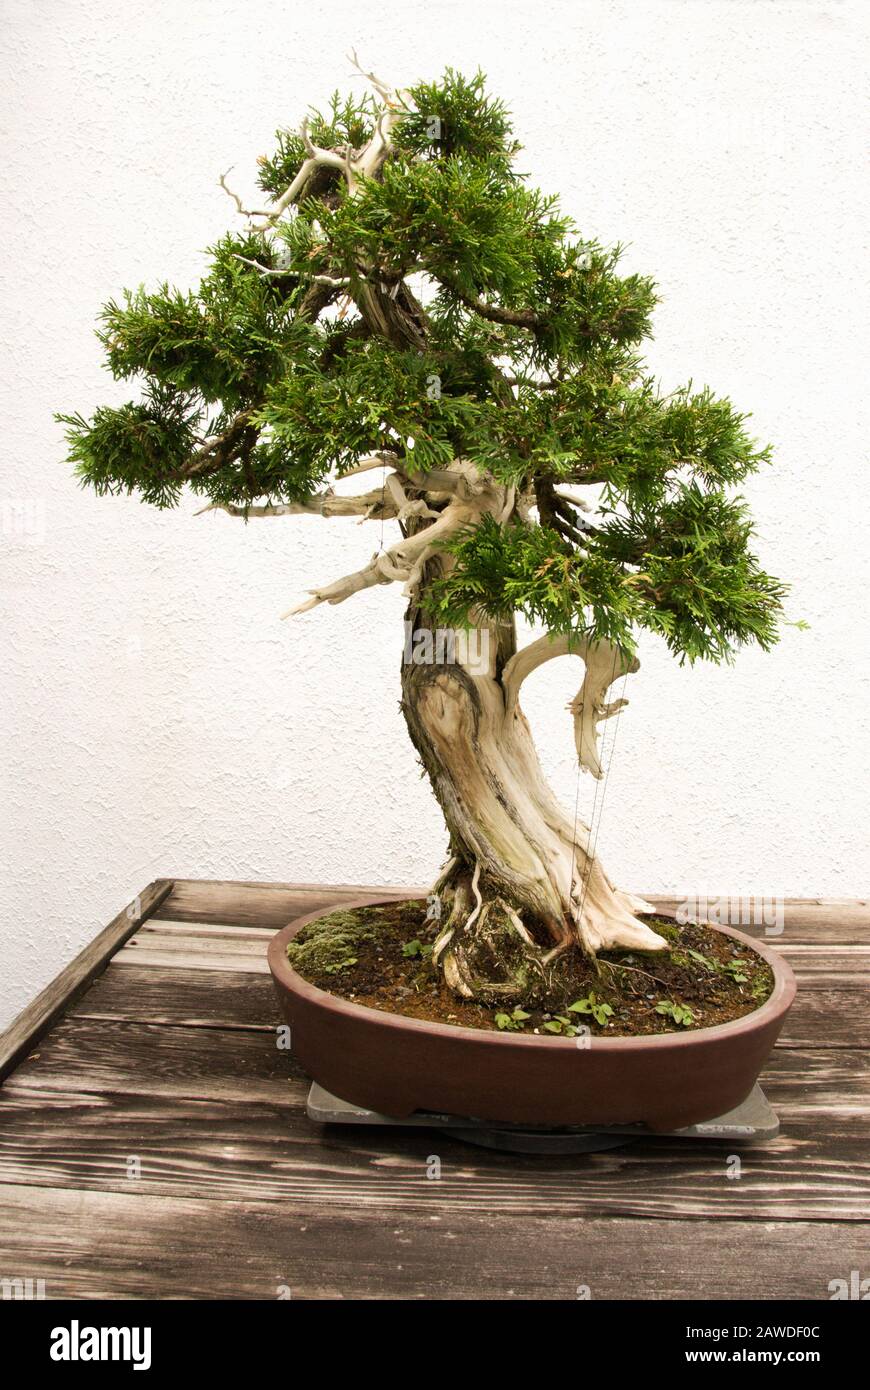 Miniatur reifte grün gefärbte Zedernbonsaibaum, der in einem Topfbehälter wächst. Stockfoto